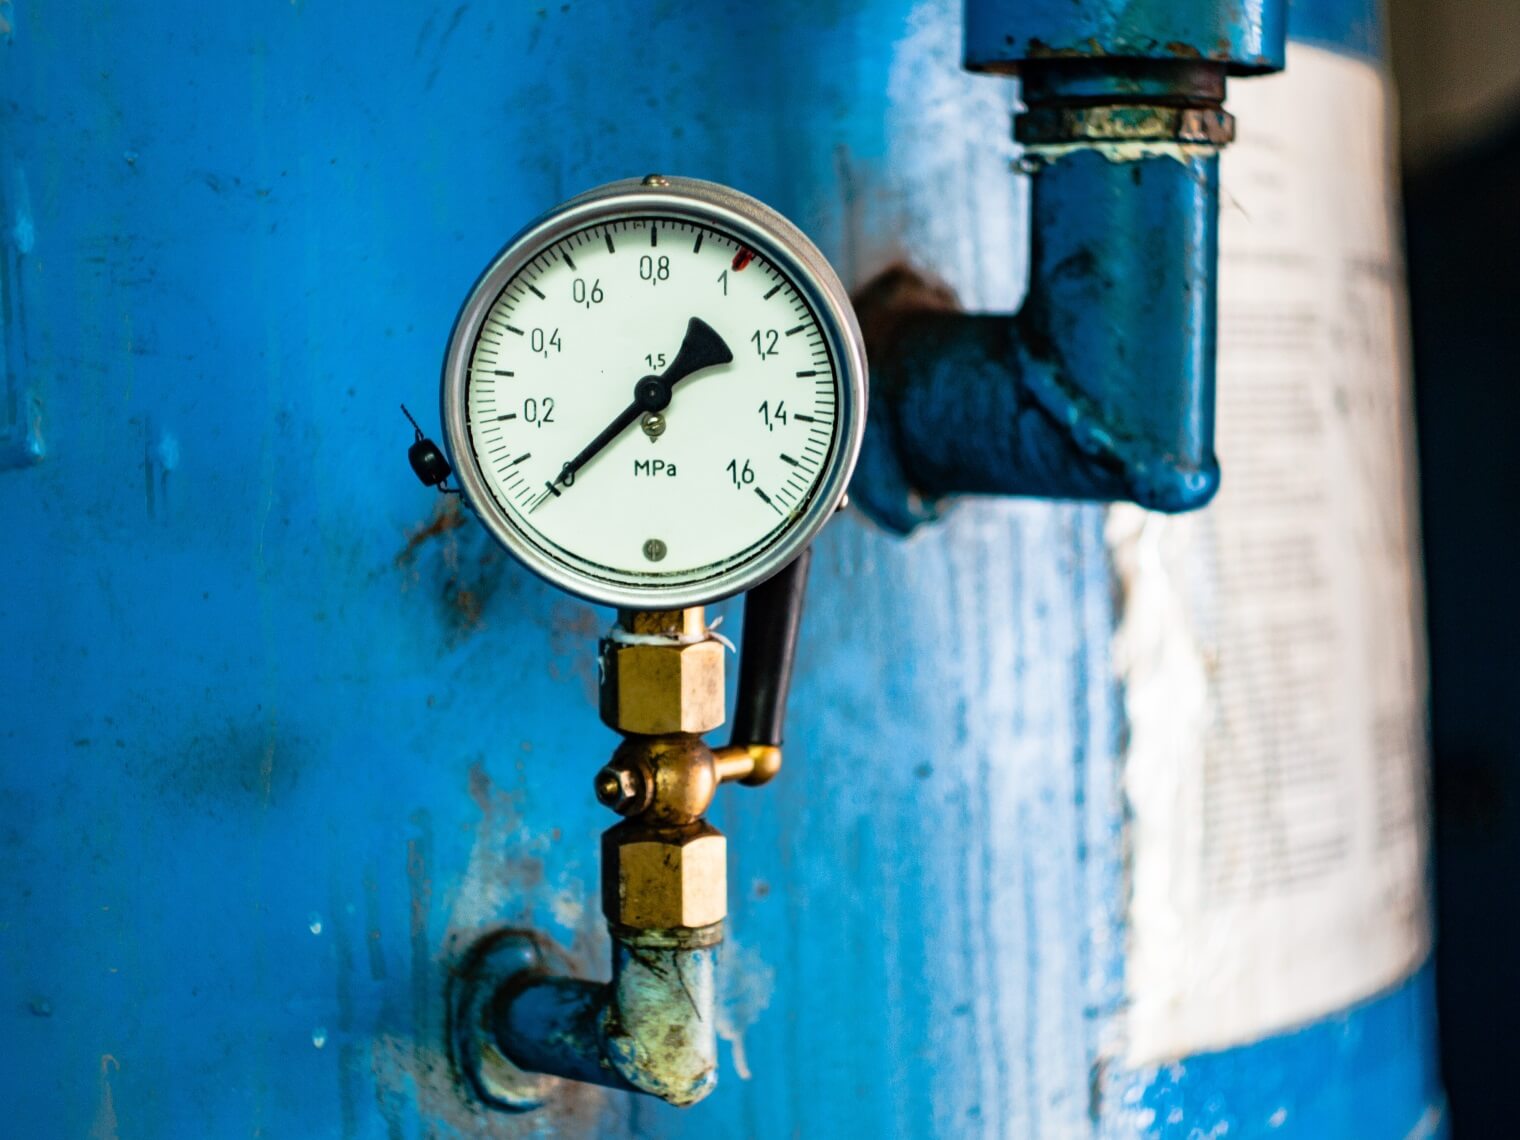 Close up image of pressure gauge on a blue boiler